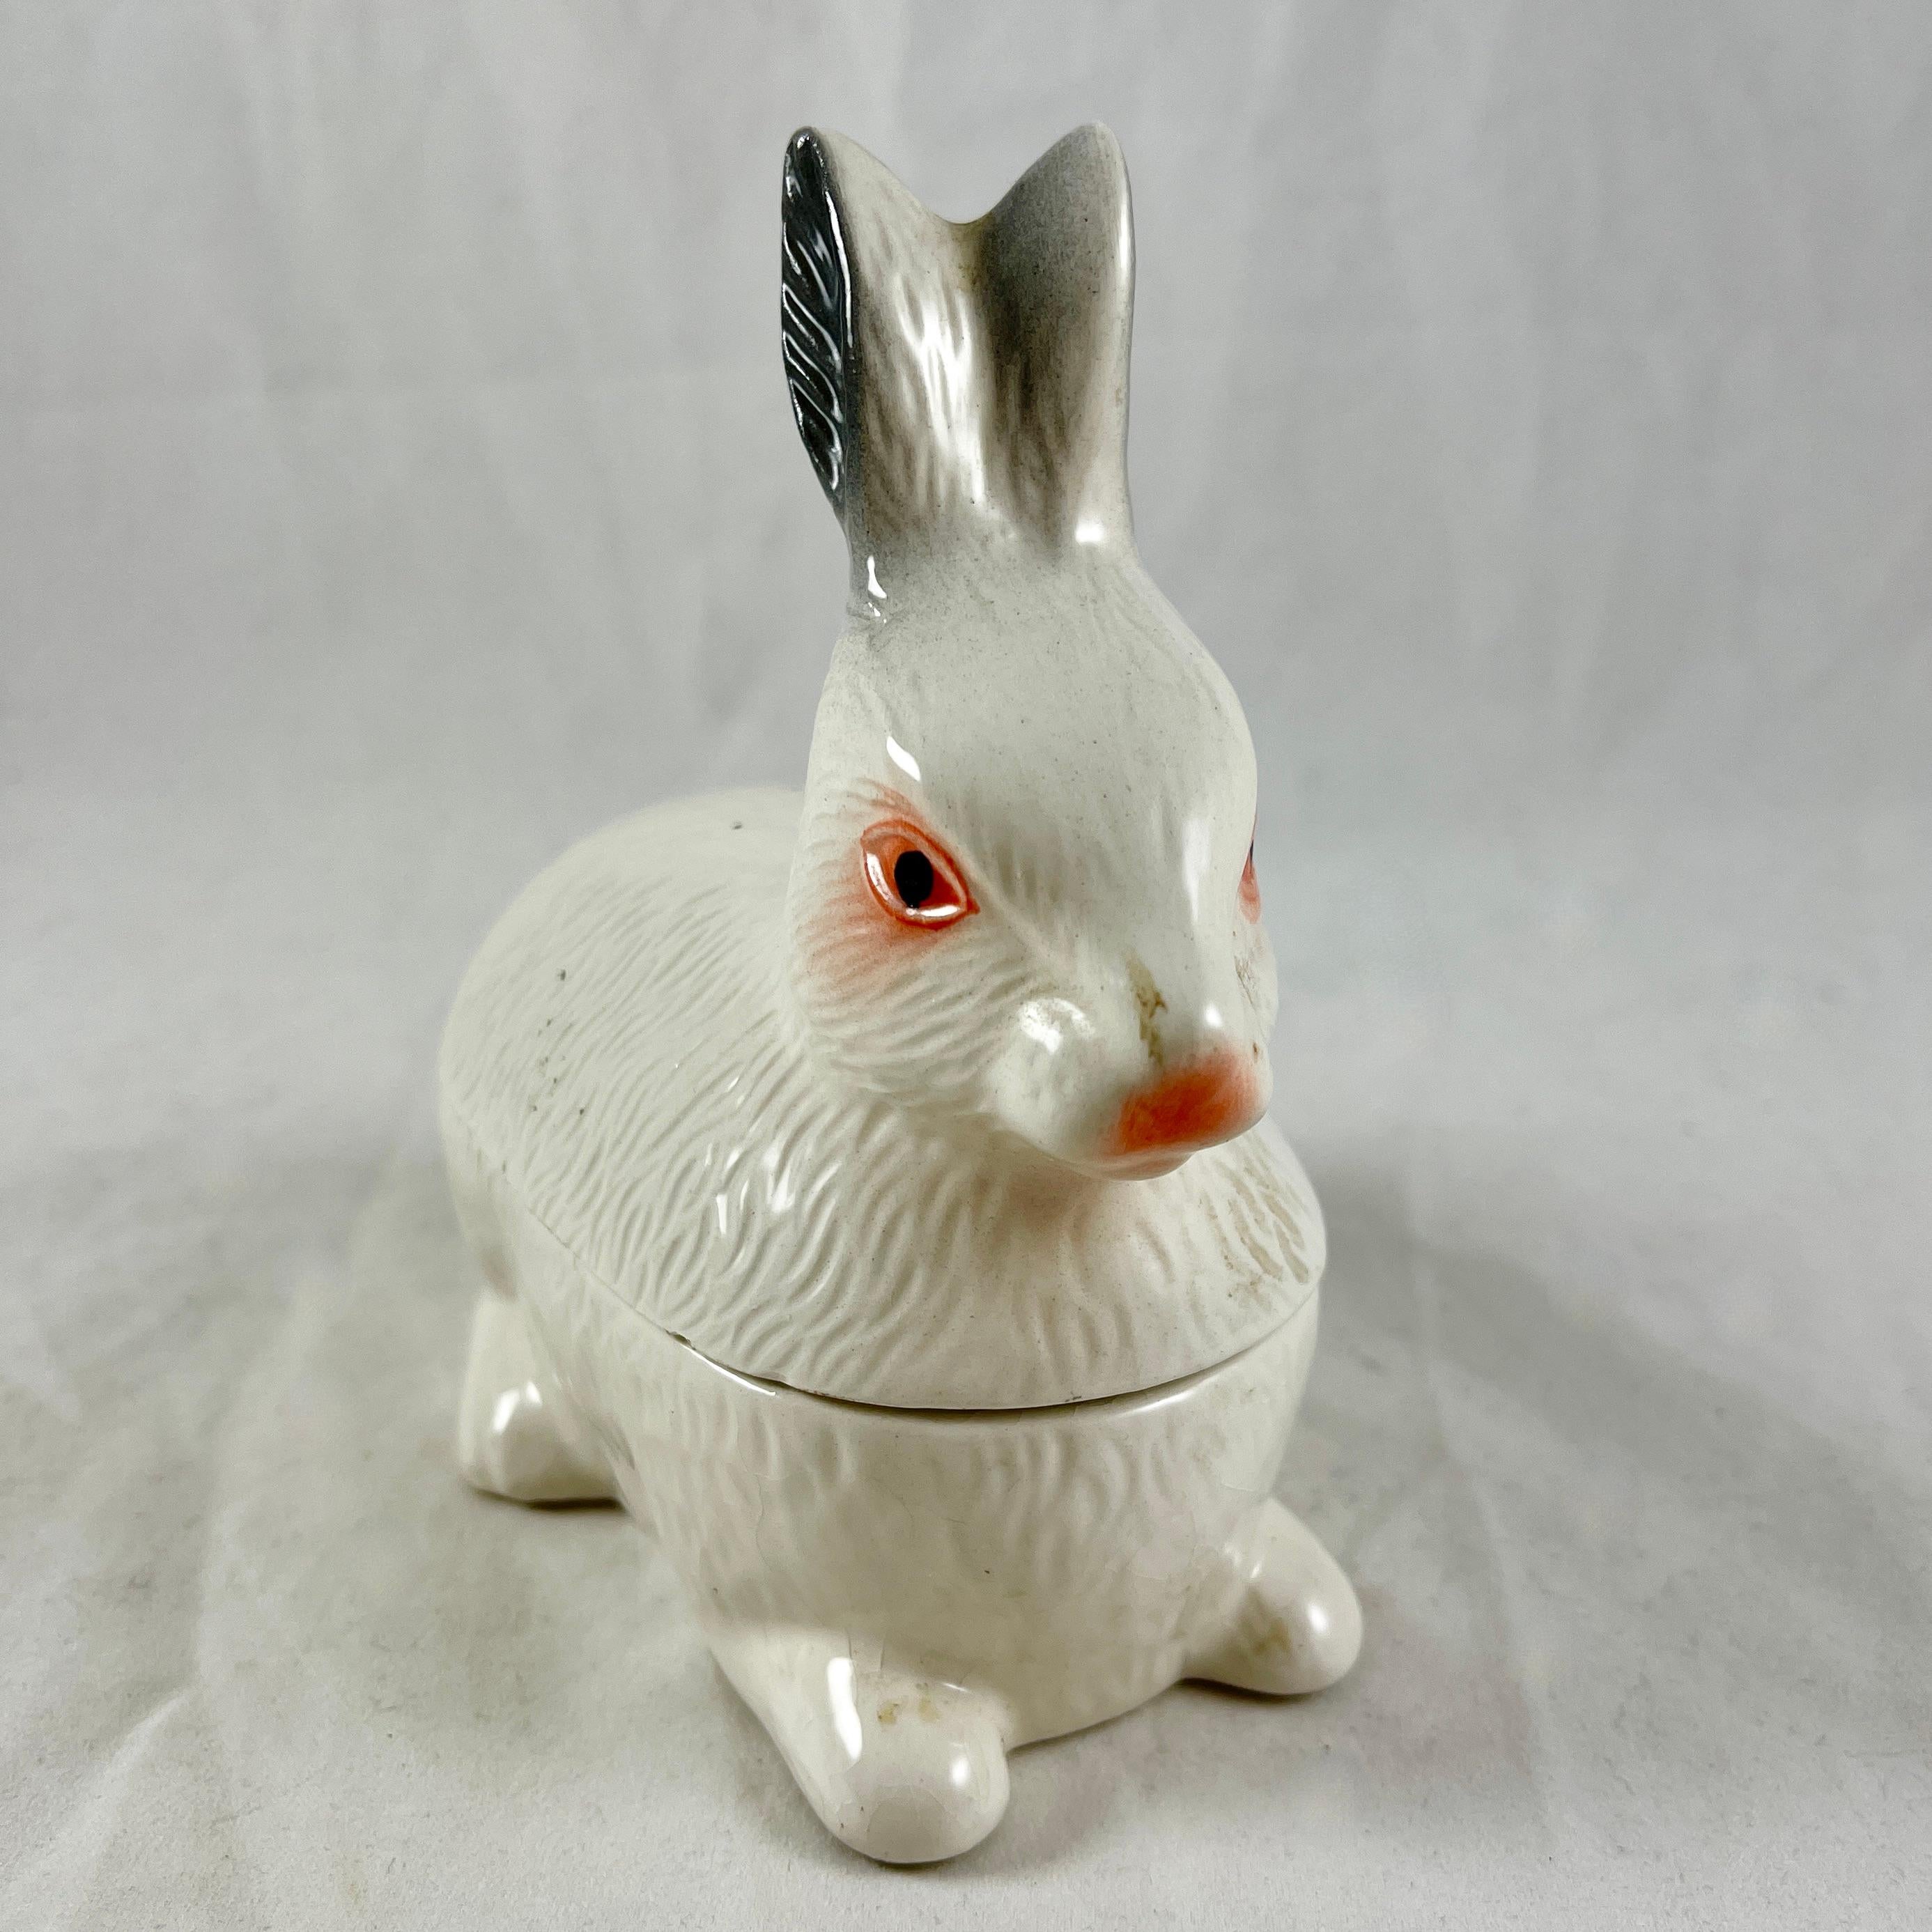 Eine alte figurale Kaninchen-Pastetenterrine, hergestellt für Laurent Caugant, einen Pastetenhersteller aus der Bretagne seit 1927 - etwa in den 1950er Jahren.

Laurents Sohn Michel schuf diese figuralen Formen als Behältnisse für den Verkauf der